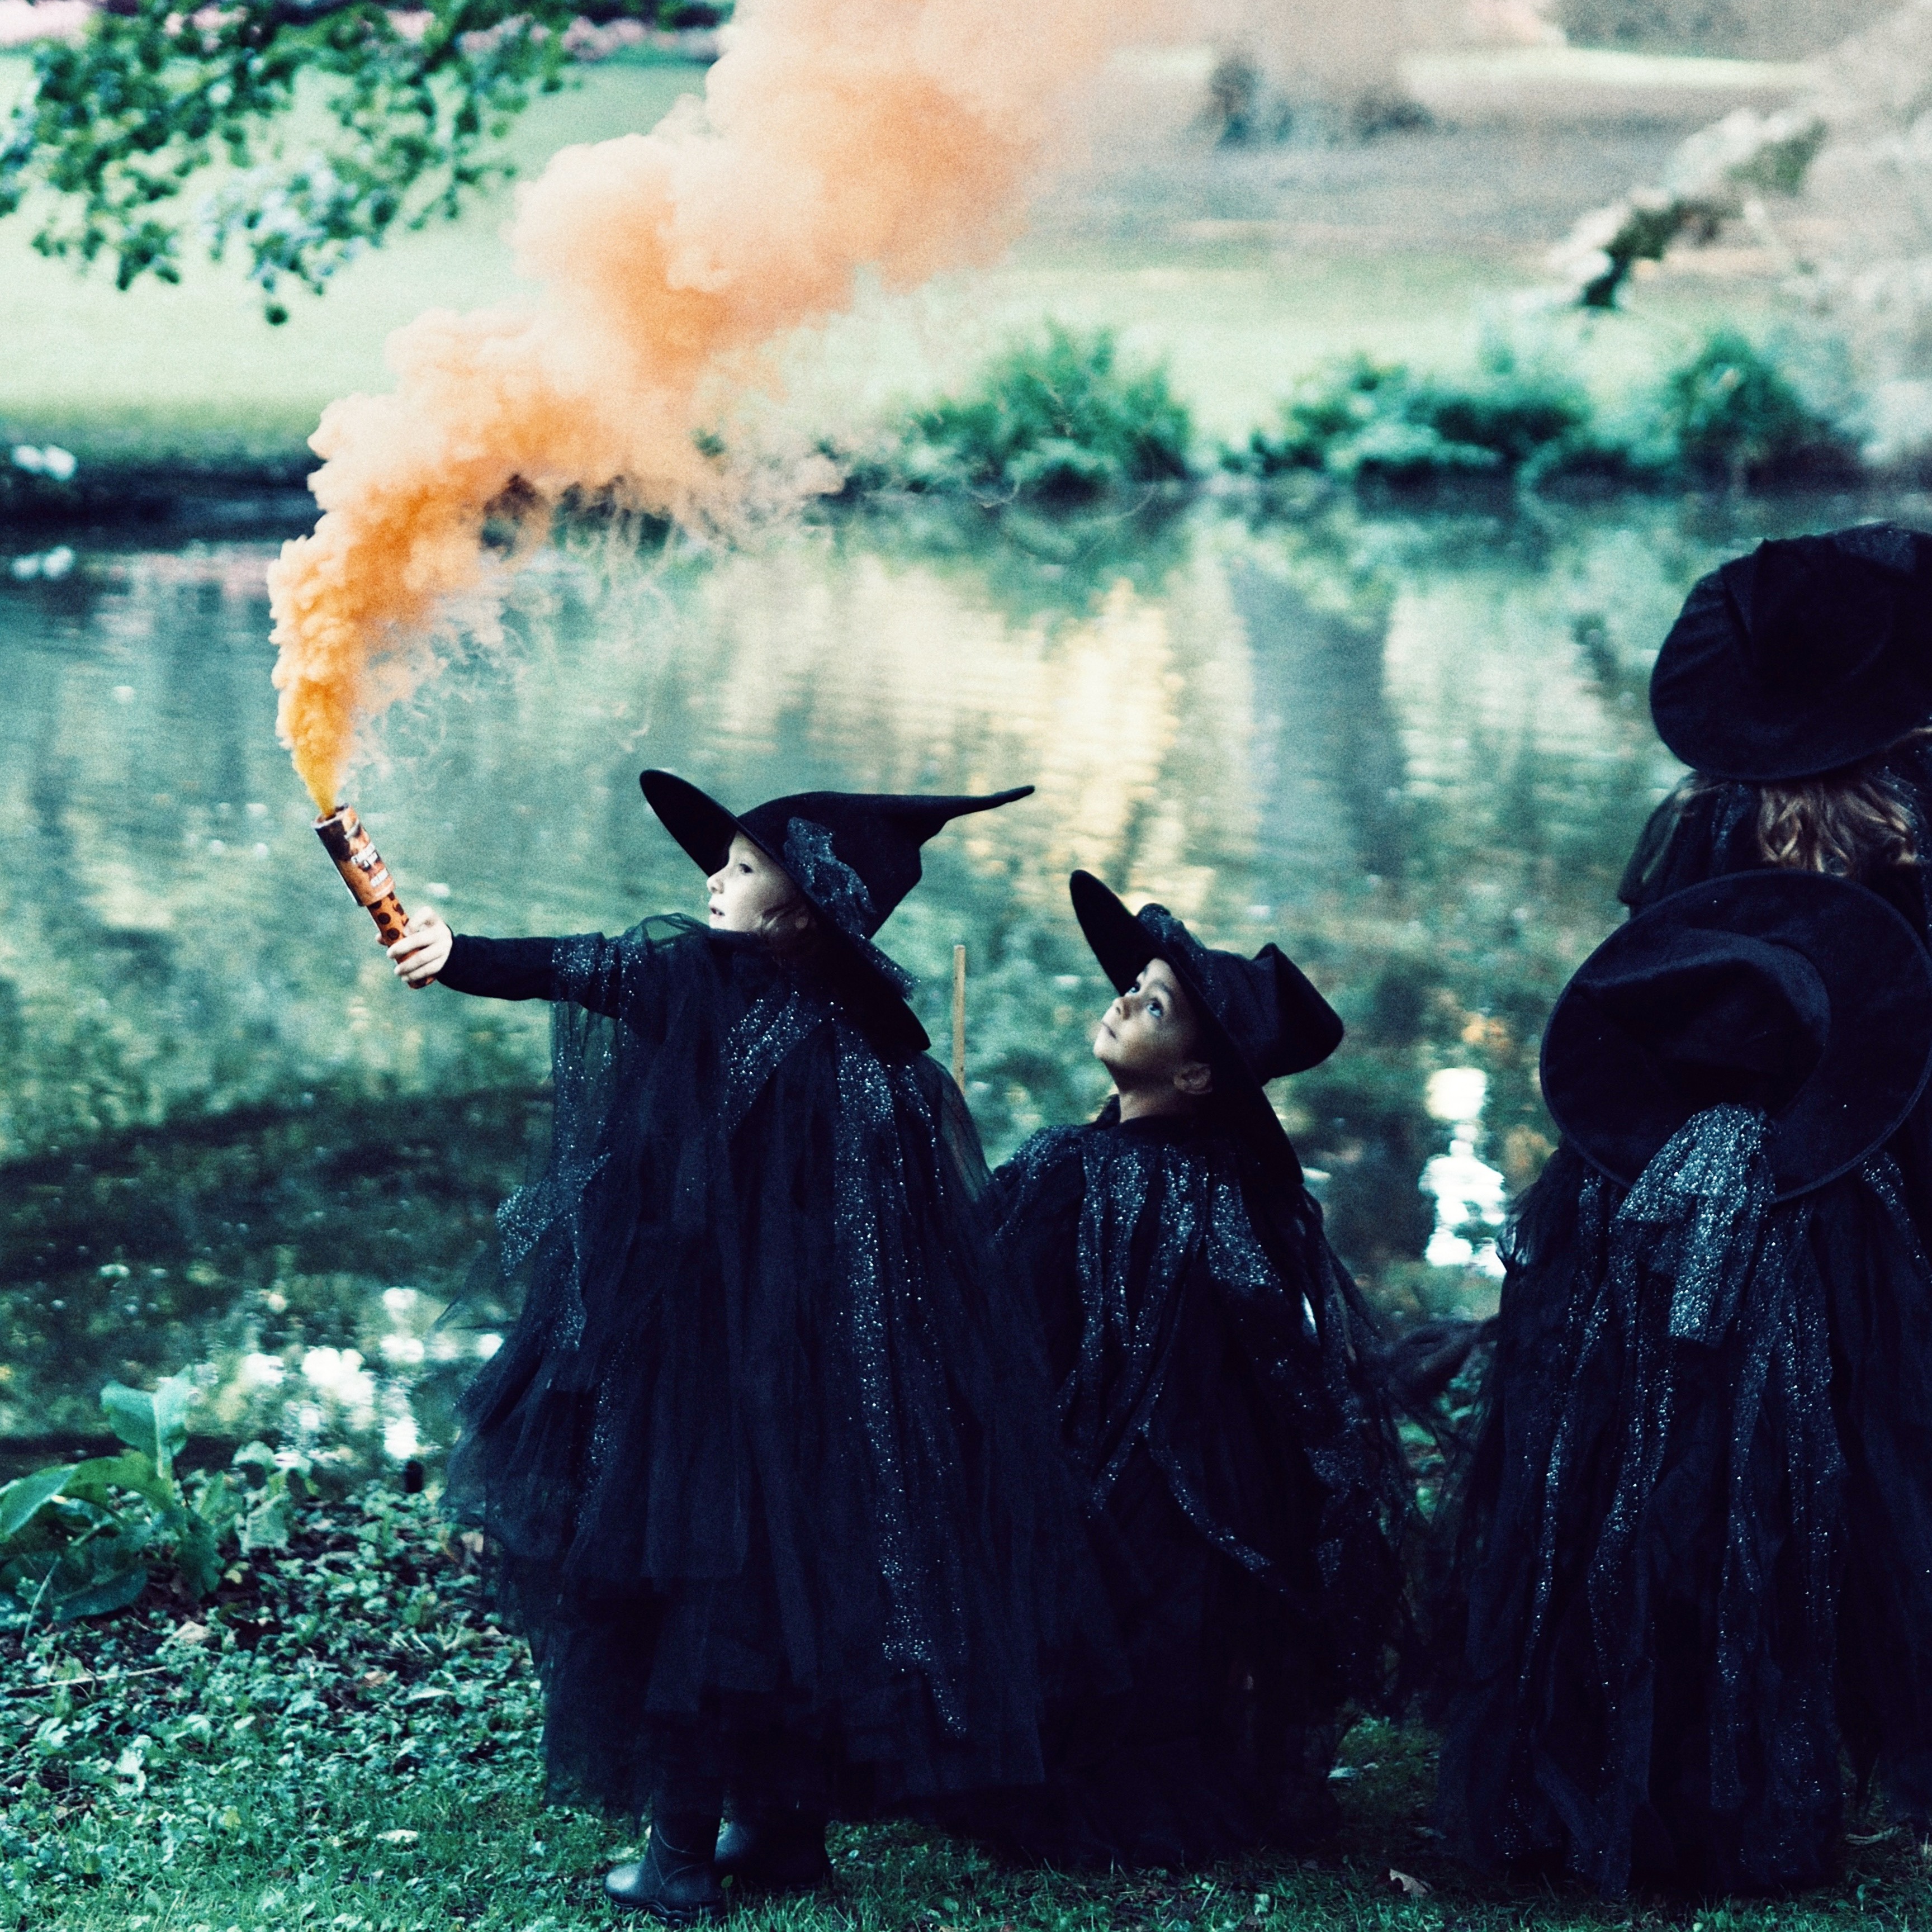 Tuofang Costume d'Halloween pour enfants, costumes d'Halloween, sorcières,  sorciers, cape avec chapeau, costumes d'Halloween, déguisement cosplay pour